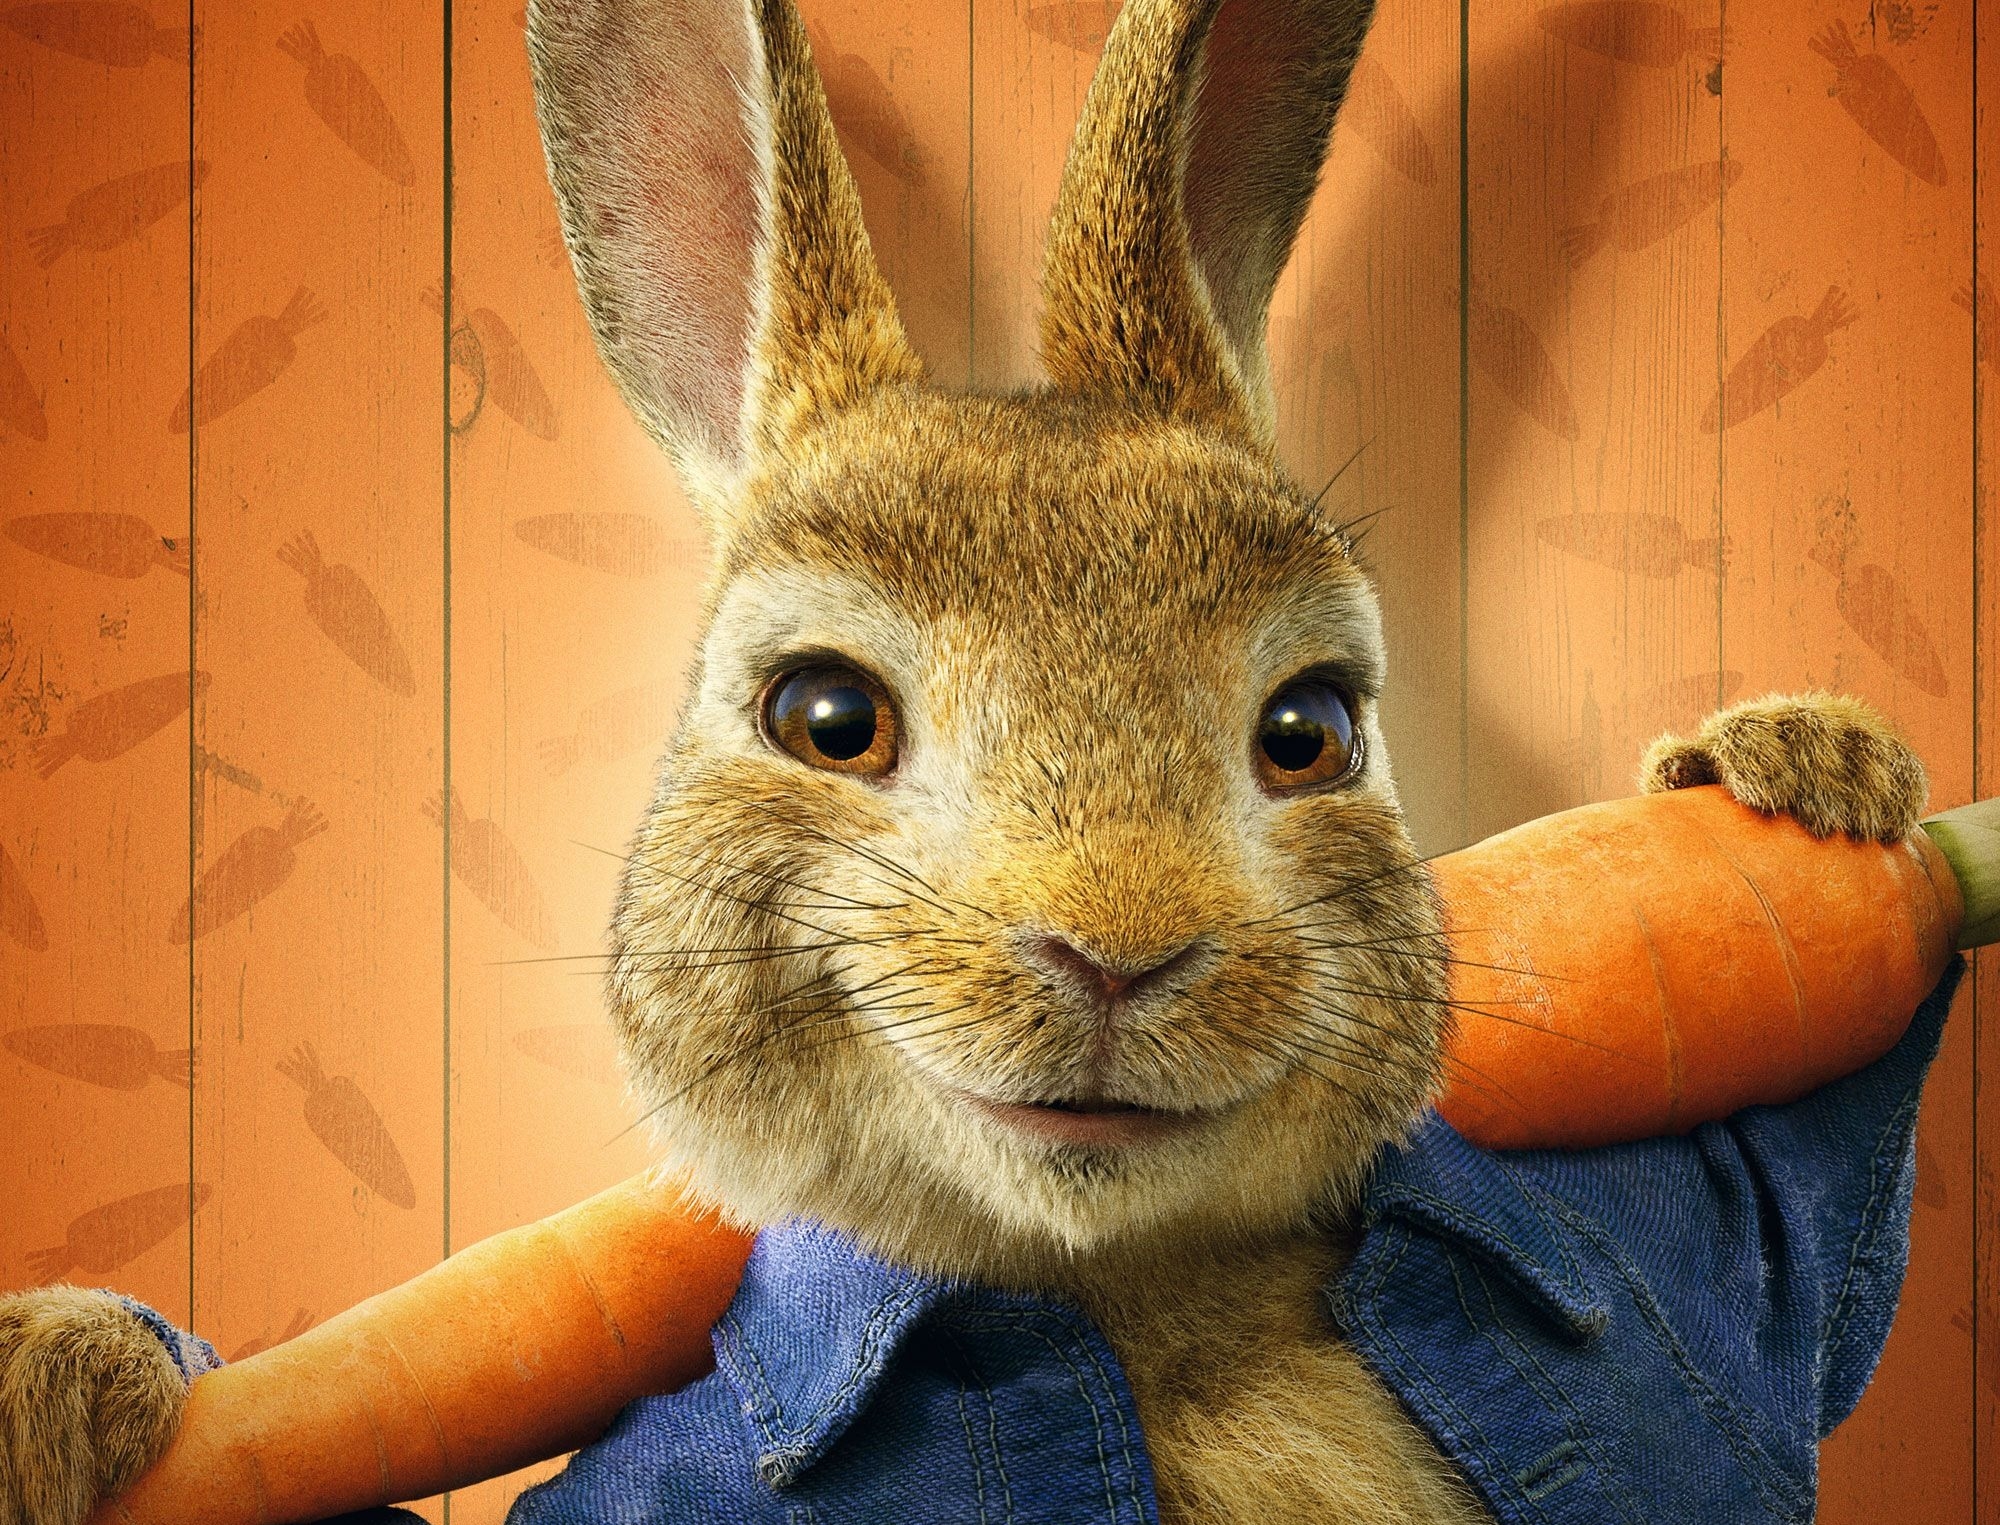 movie, peter rabbit 2: the runaway